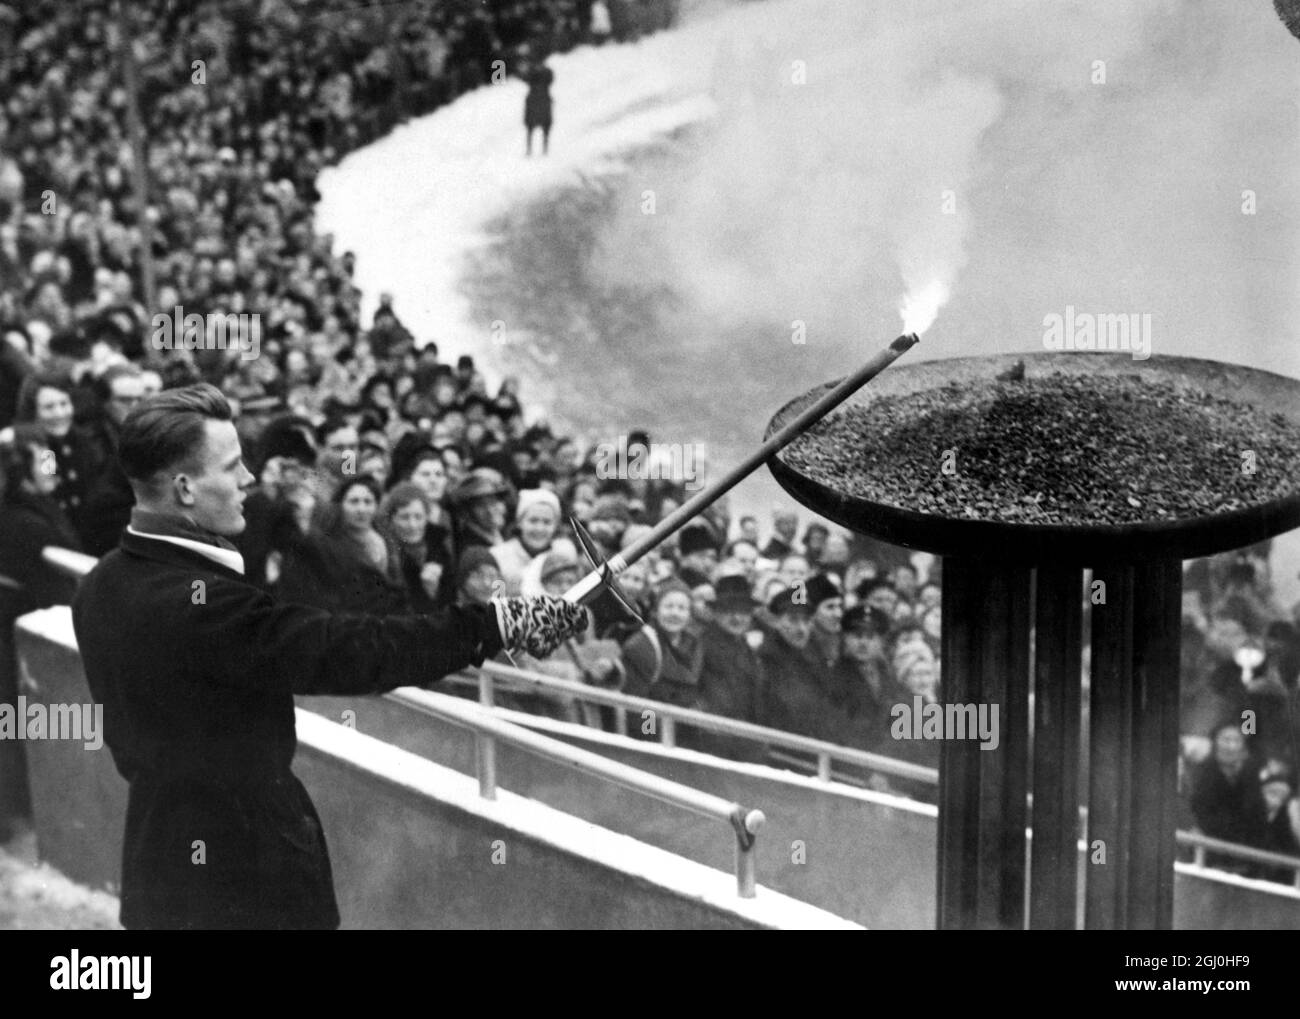 Olympische Winterspiele 1952 - Oslo, Norwegen Eigil Nansen, der Enkel des großen Entdeckers Frithjof Nansen, zündet zur Eröffnung der Olympischen Winterspiele im Bislet-Stadion in Oslo die olympische Flamme an. - 15. Februar 1952 - ©TopFoto Stockfoto